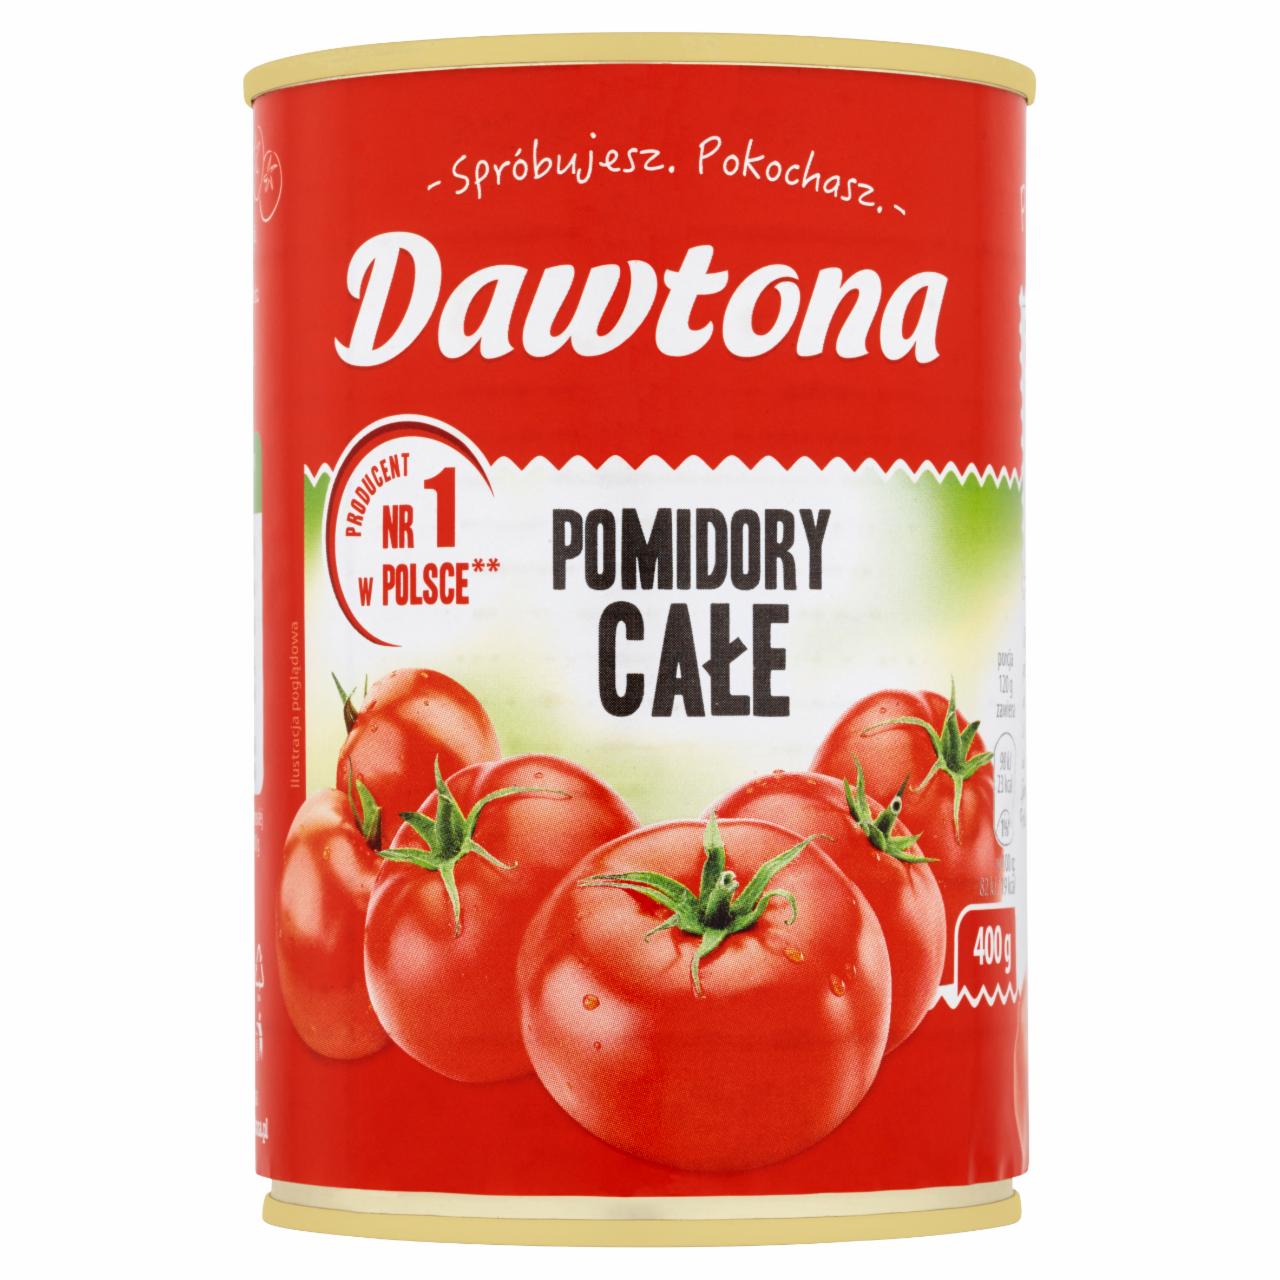 Zdjęcia - Dawtona Pomidory całe 400 g